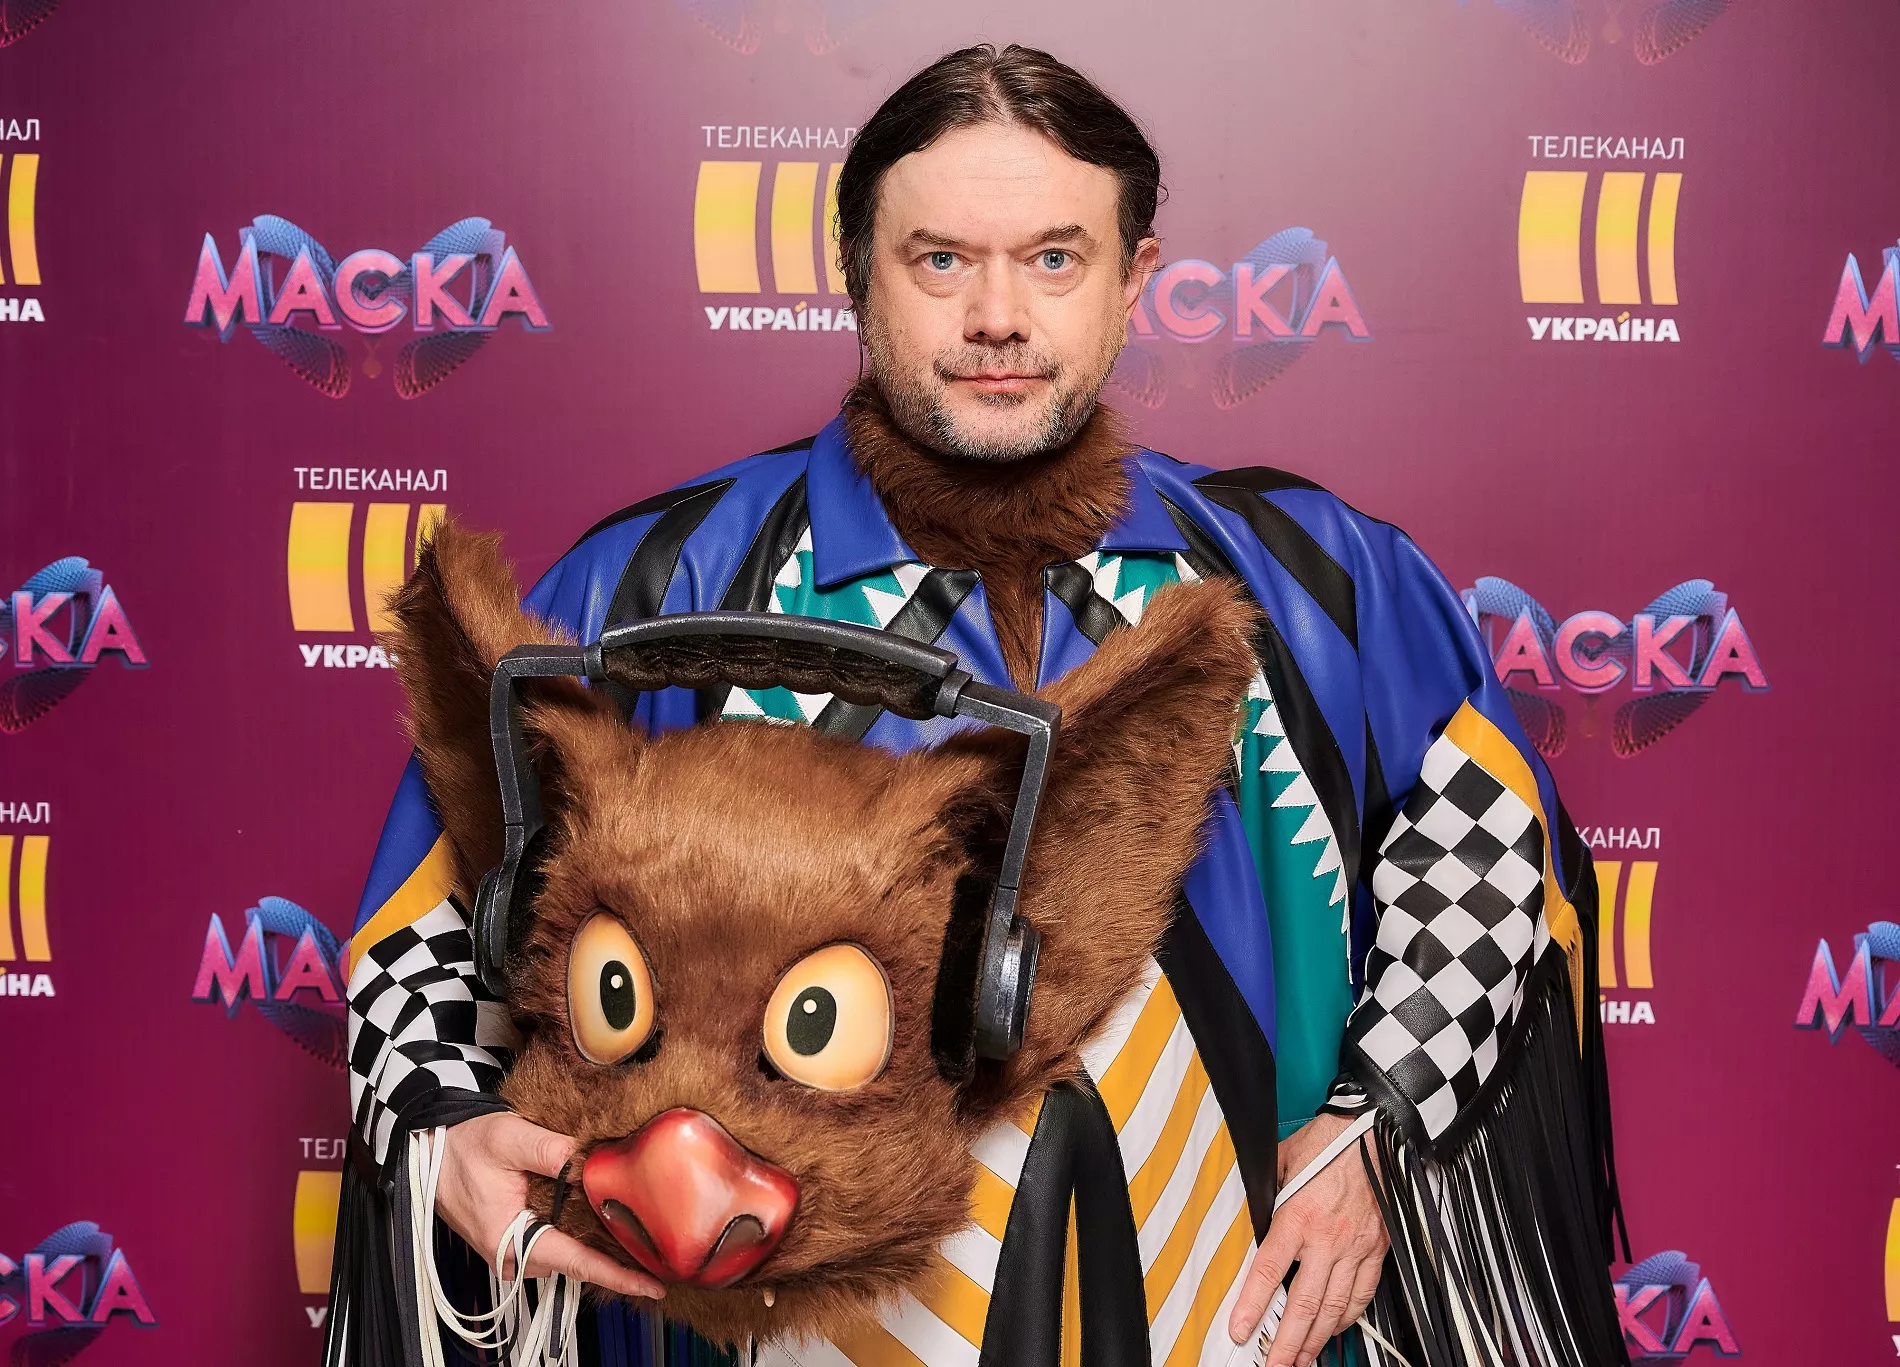 Остап Ступка оказался в костюме Кажана на гипершоу "Маска"